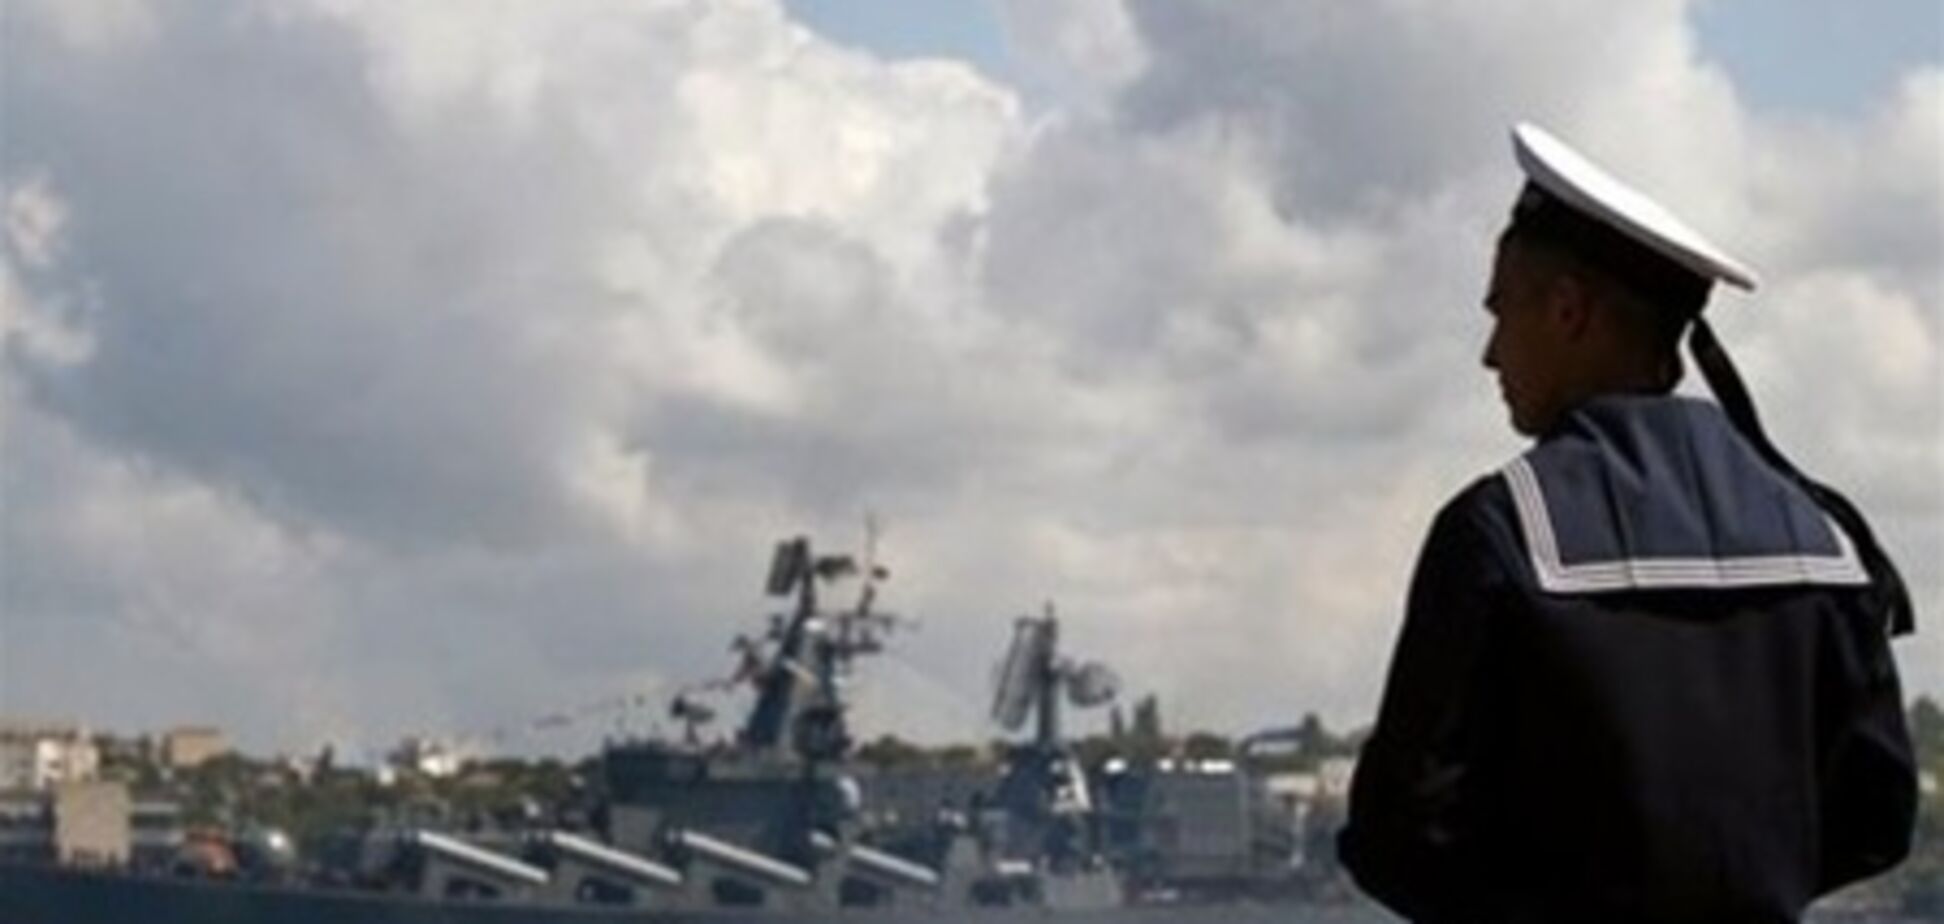 У Єгипті без пояснень затримали судно з 6 українцями - ЗМІ